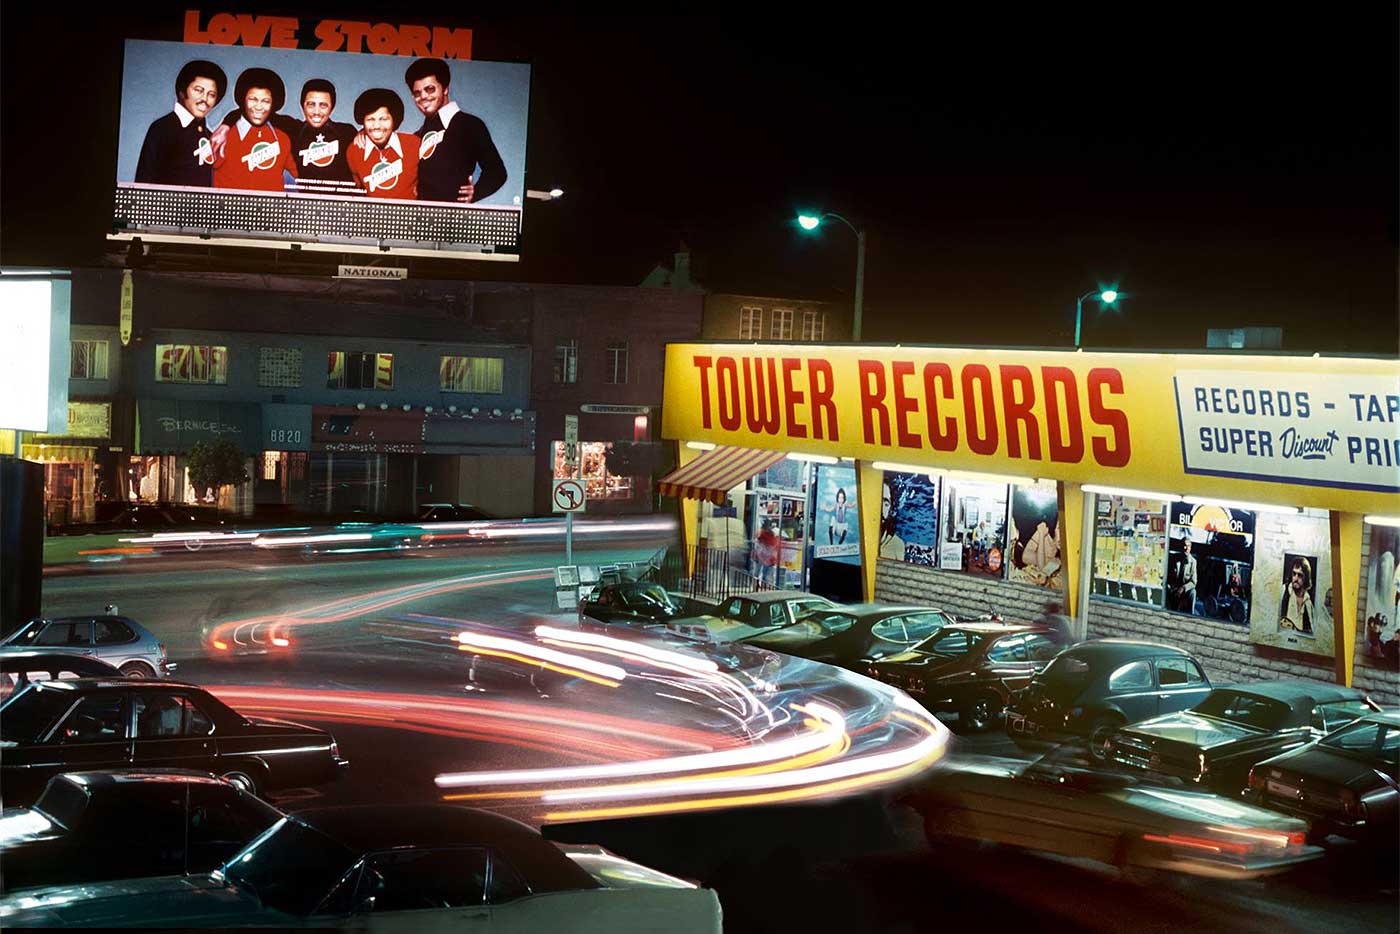 "Tower Records era un sitio único donde trabajar"